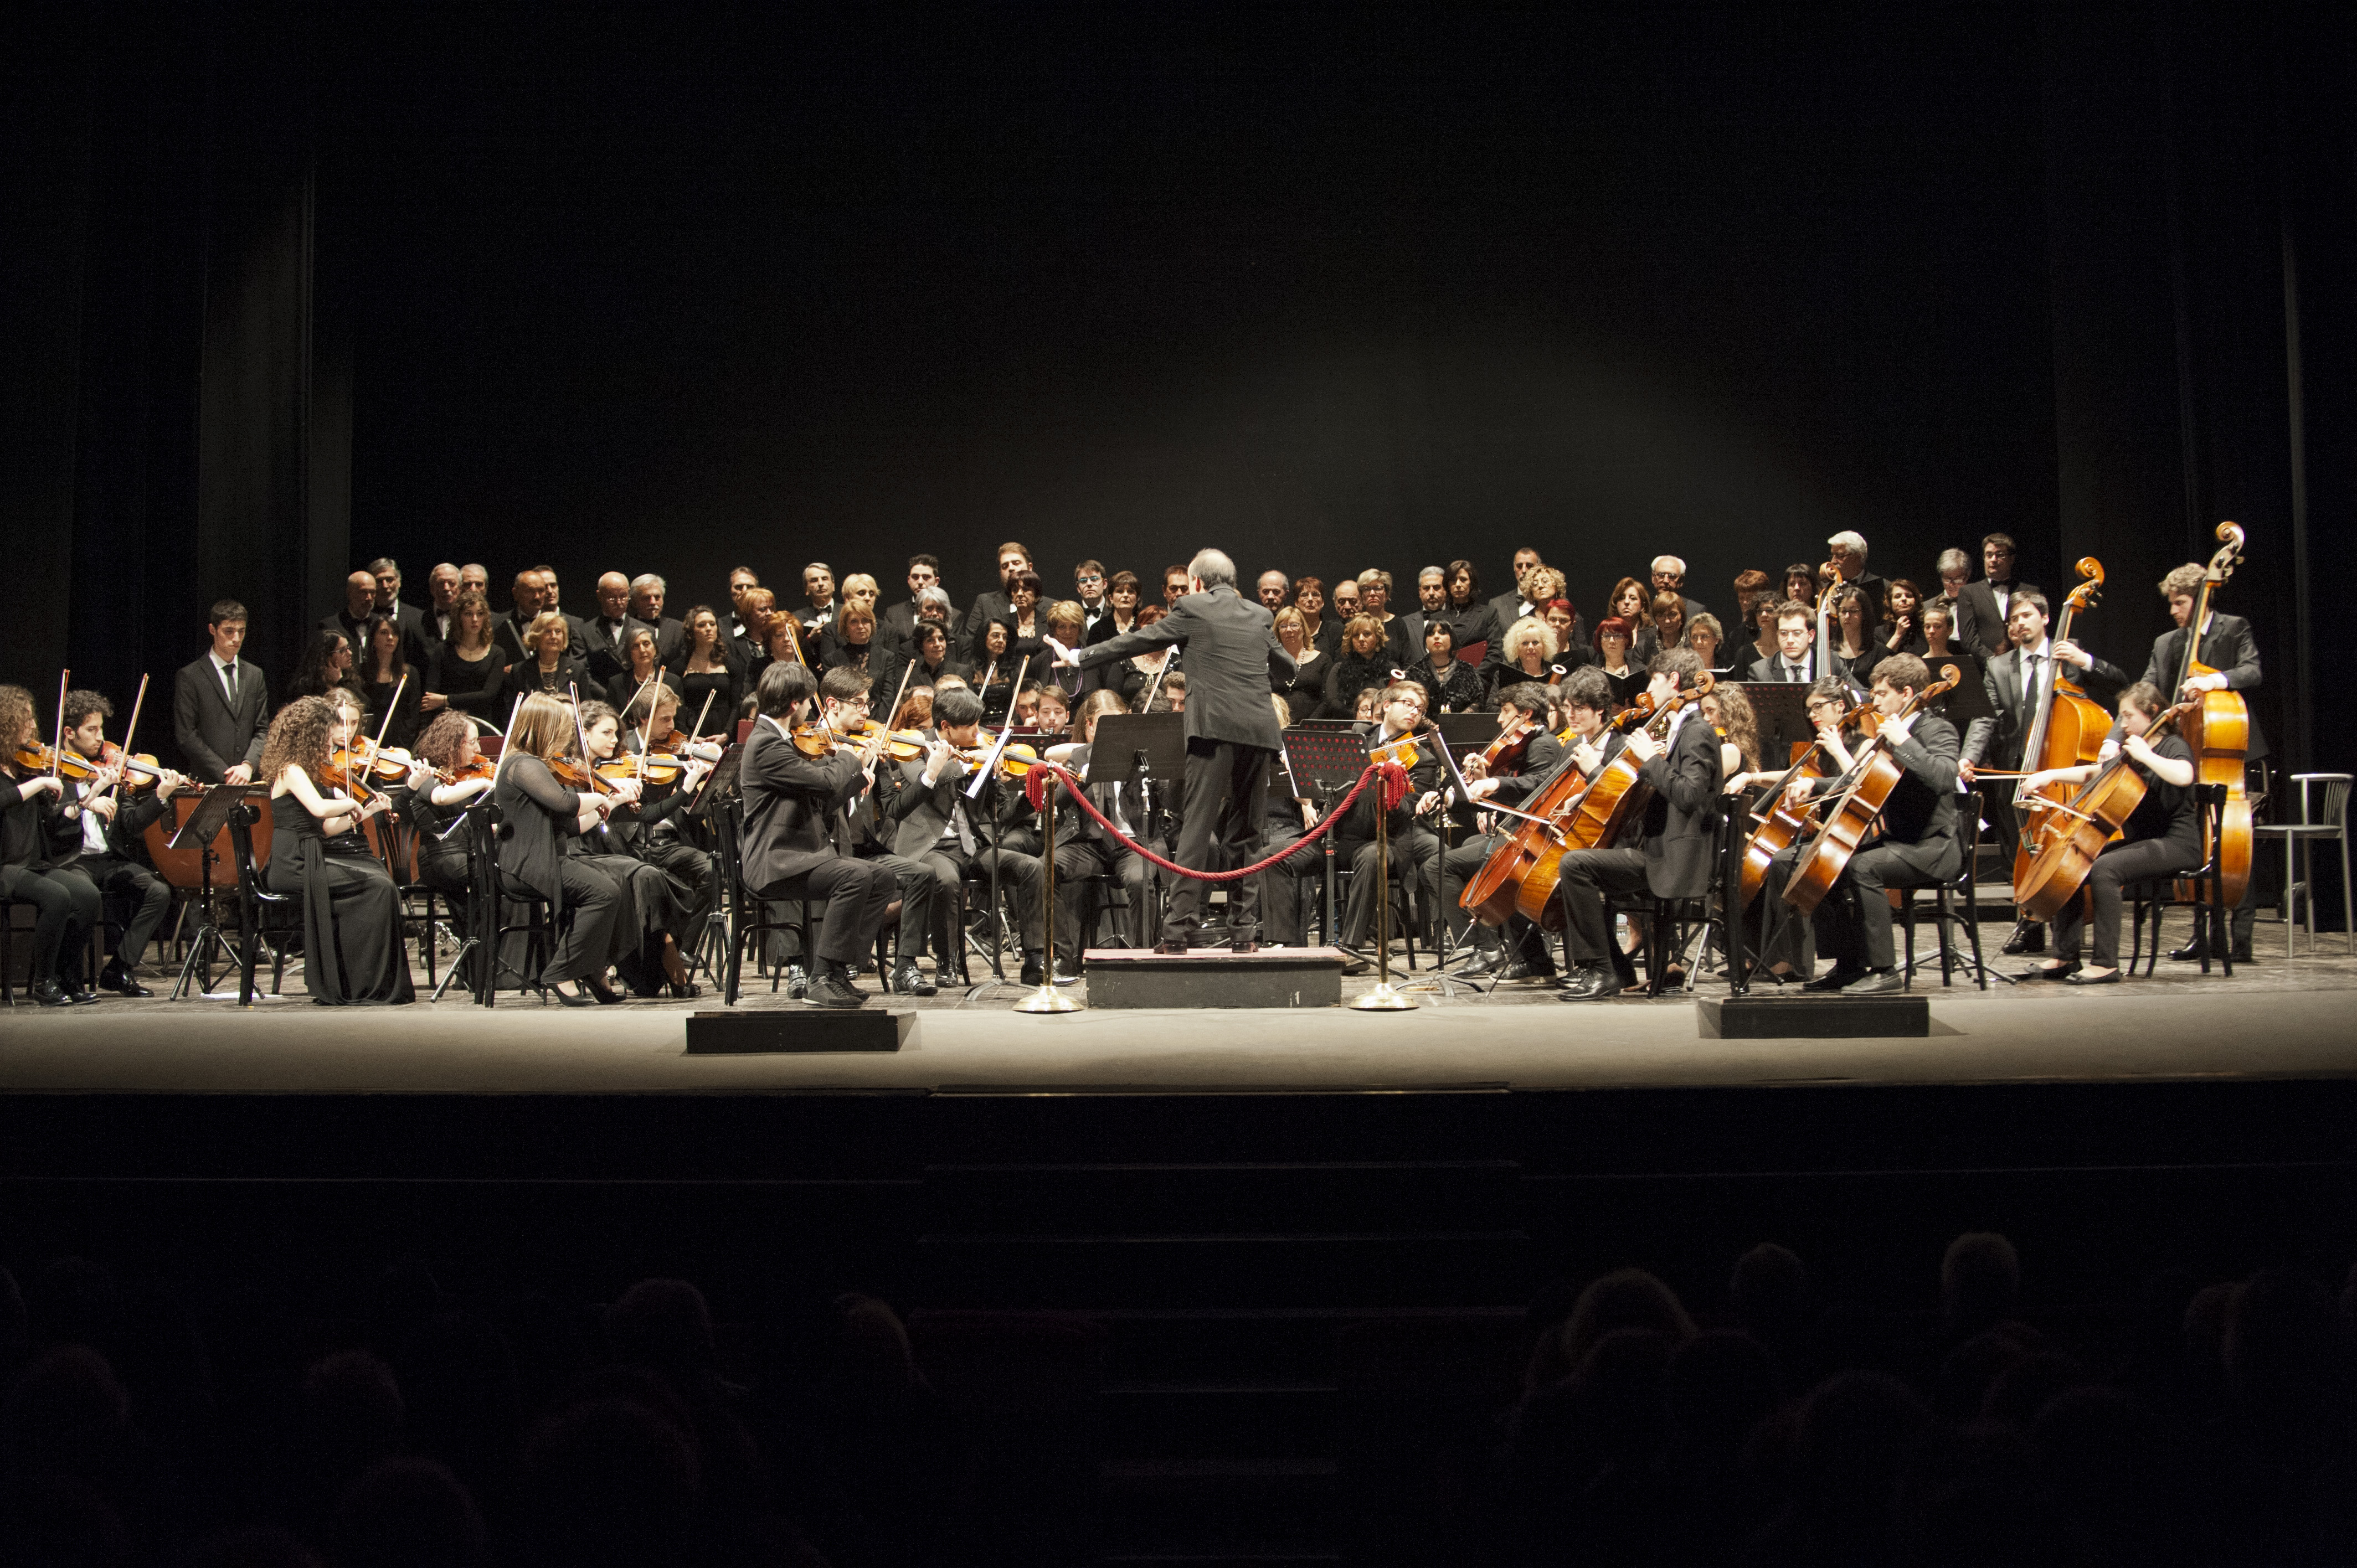 Viaggio alle porte dell'oceano: Orchestra Giovanile di Roma al Festival Eurochestries 2015